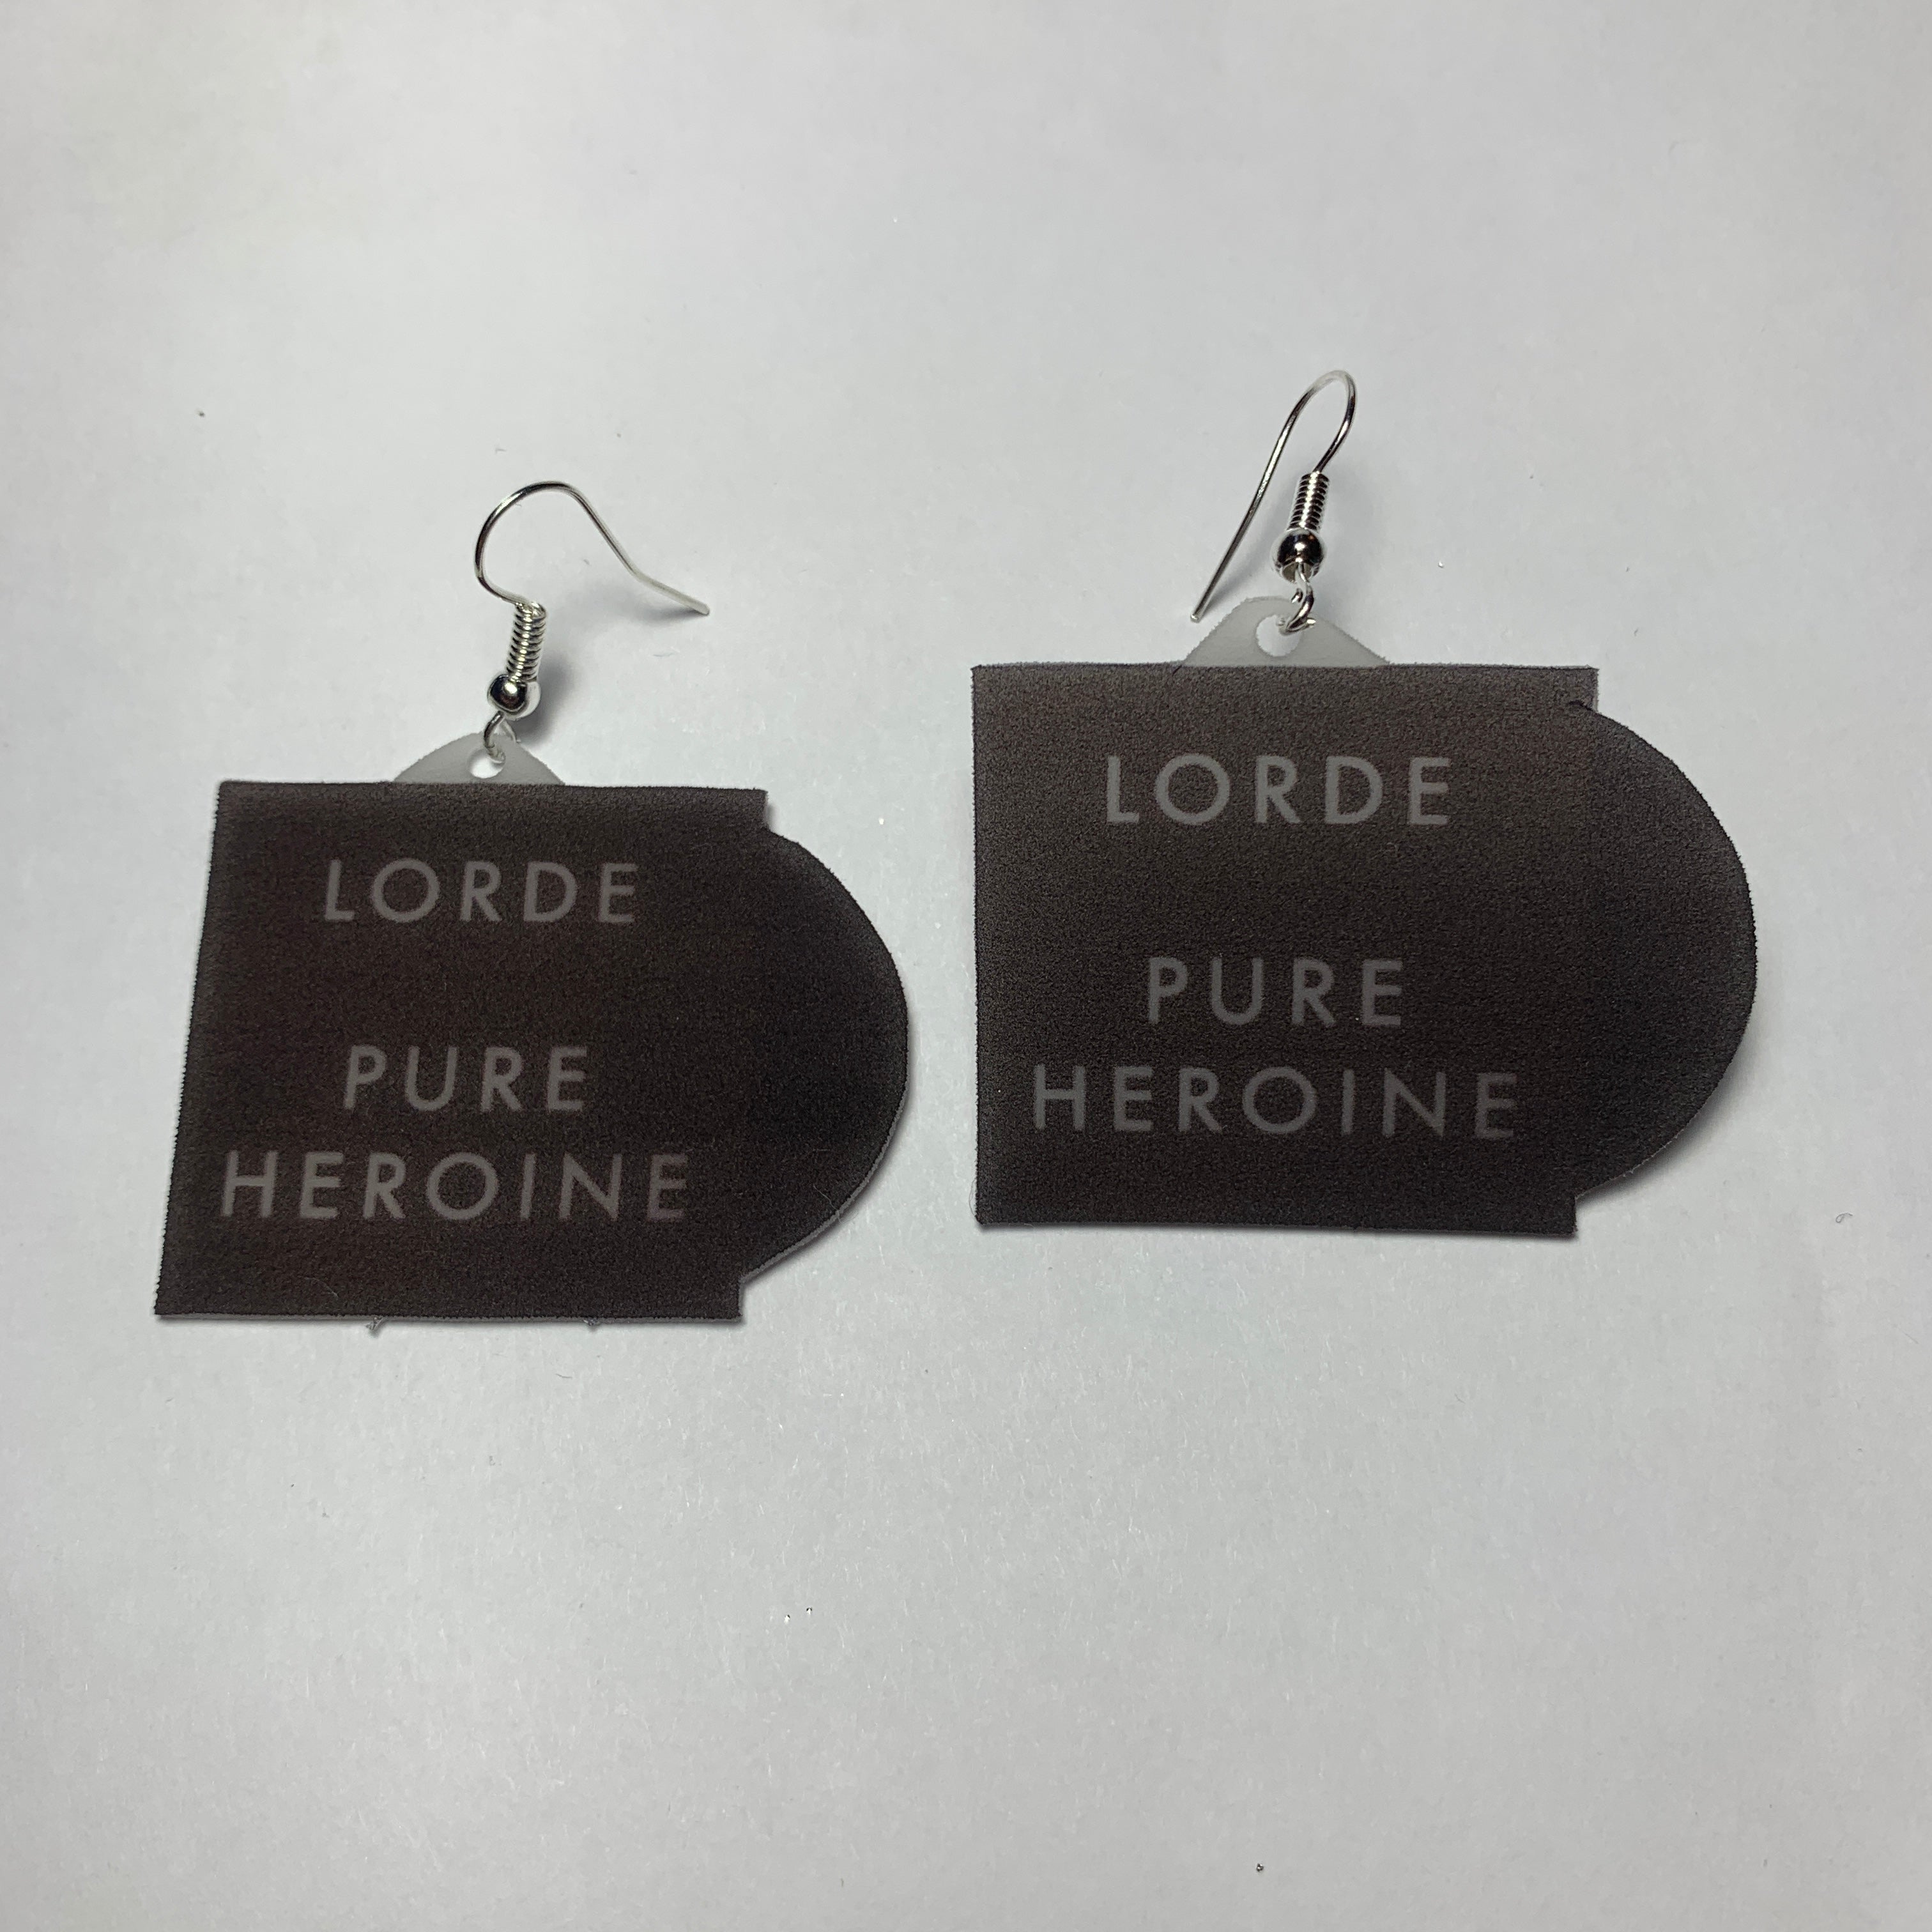 Lorde Pure Heroine Vinyl Album Handmade Earrings!